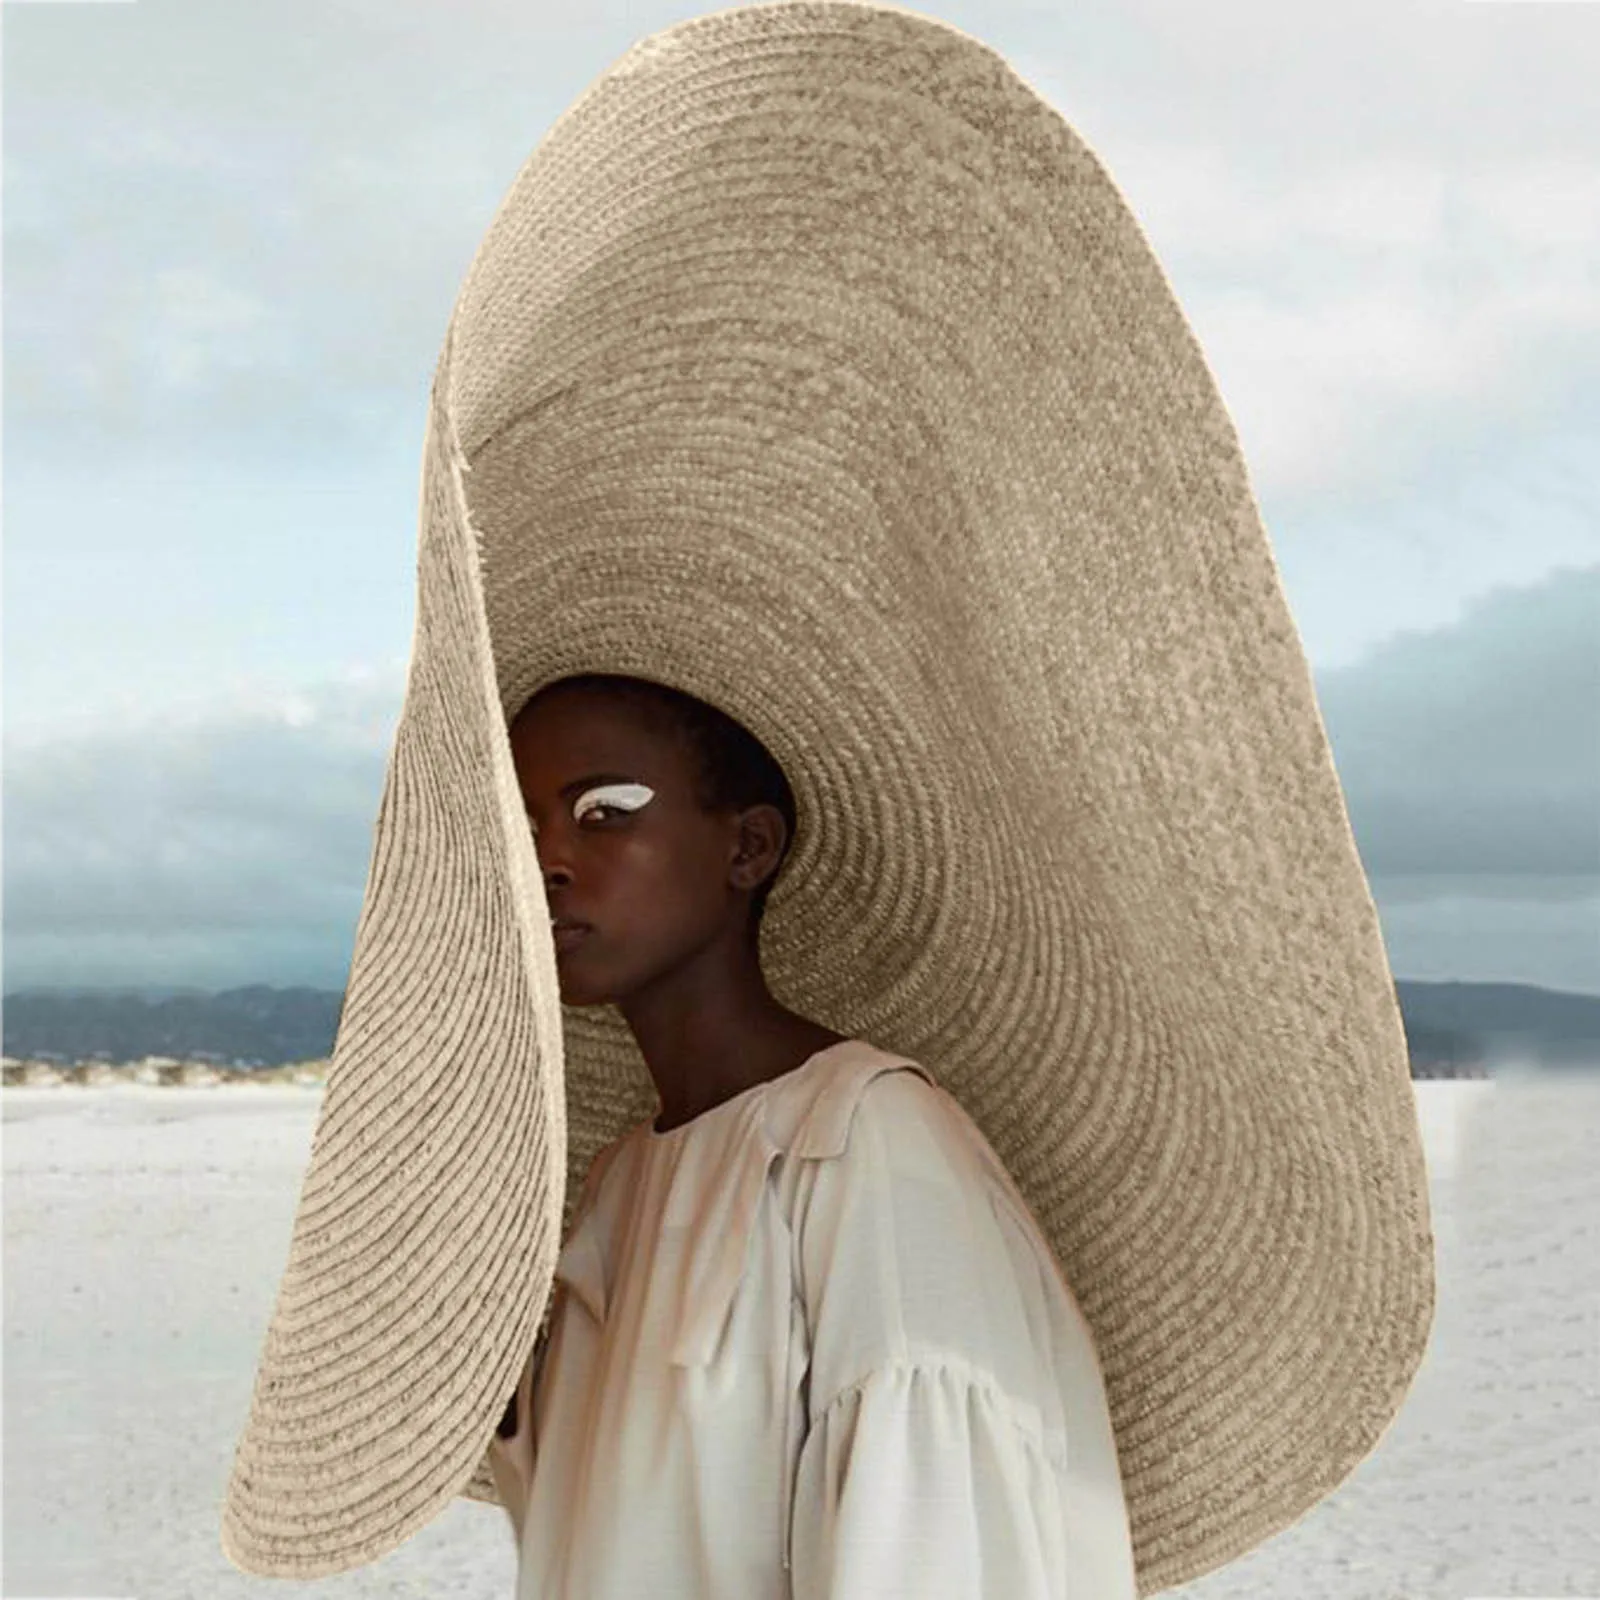 Самые практичные и стильные пляжные шляпы для защиты от солнца